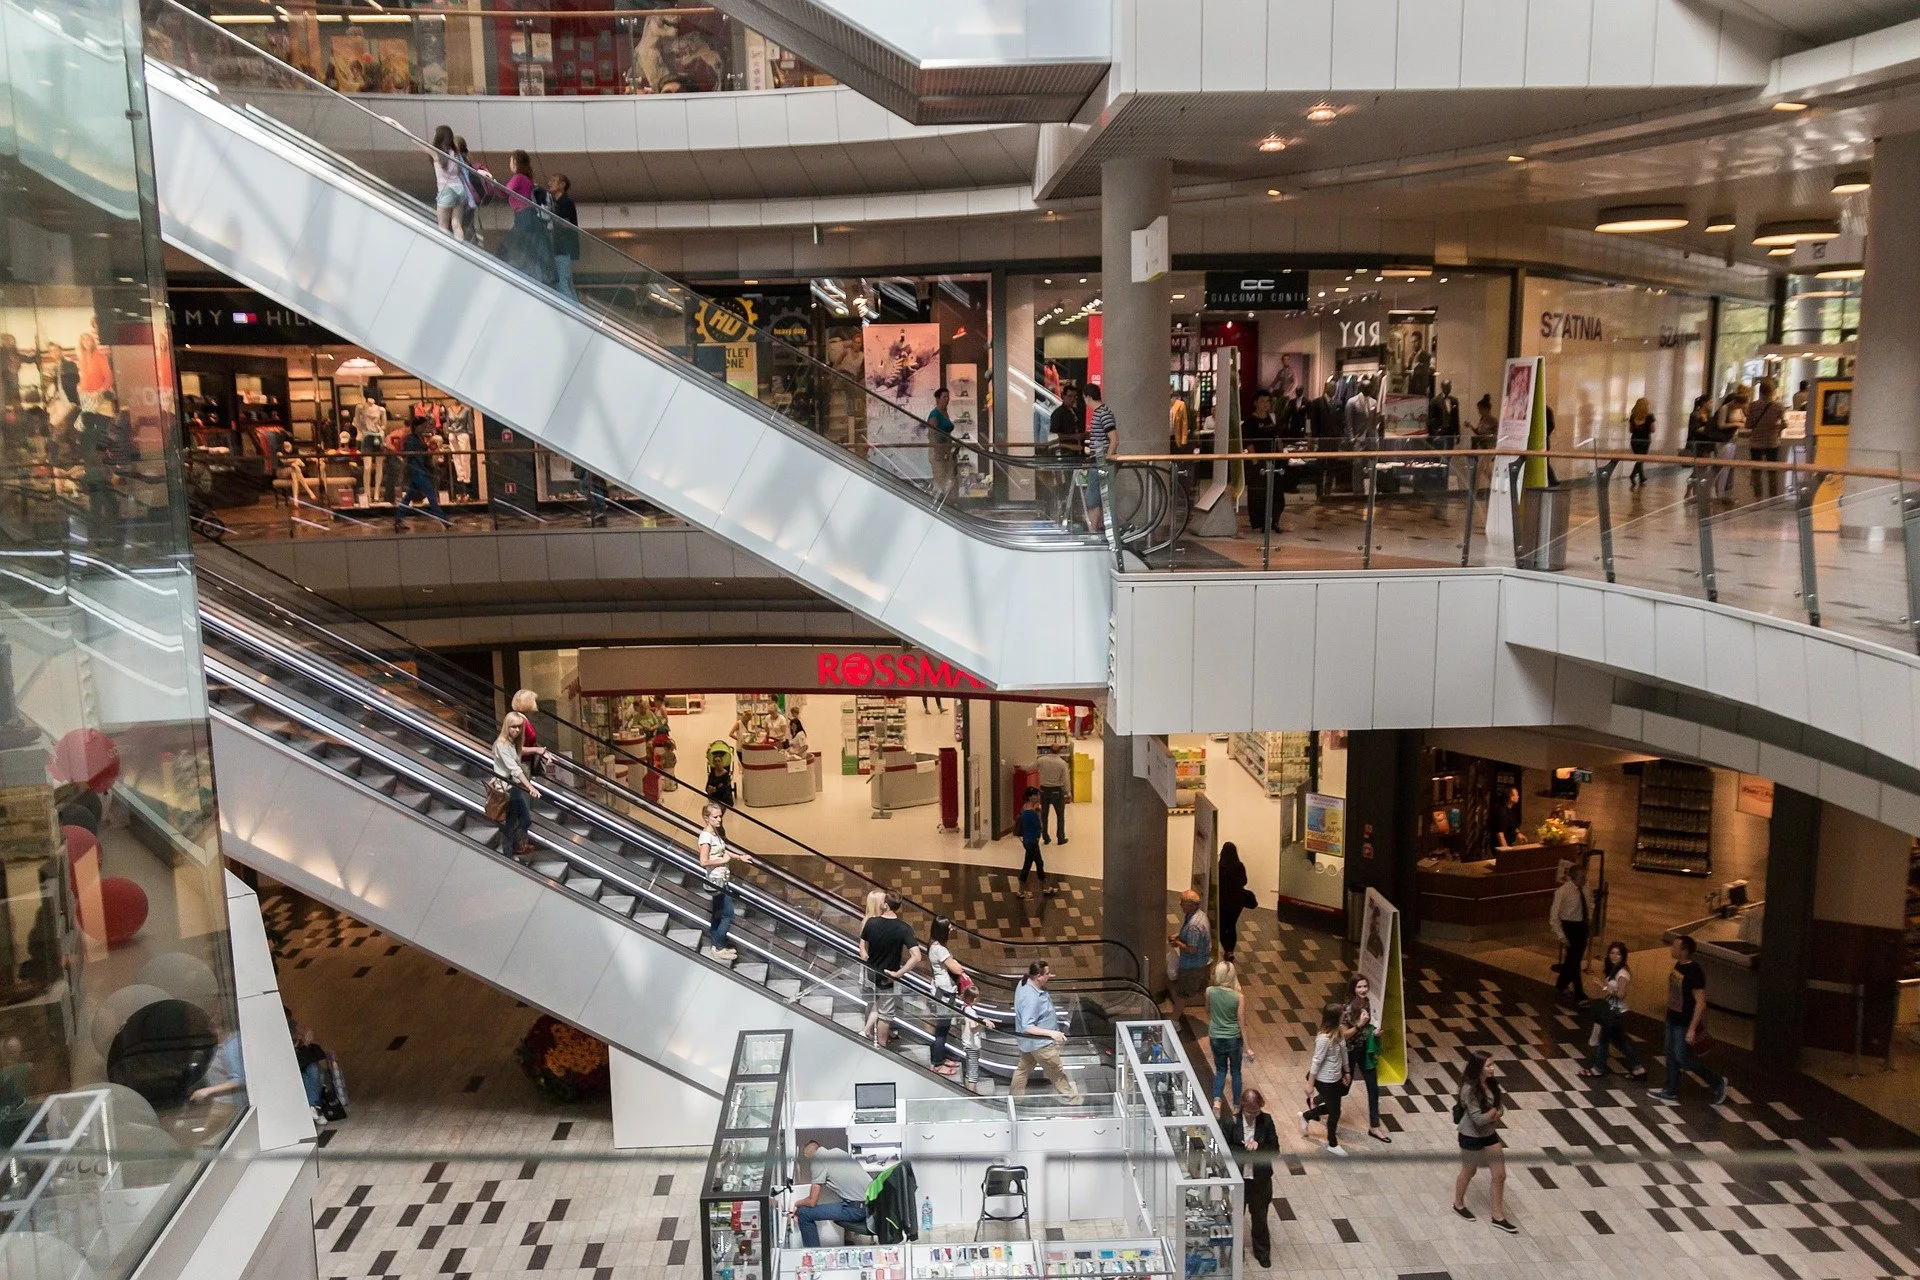 Shoppings (finalmente) abrem lojas em maio – e uma empresa da Bolsa se destaca